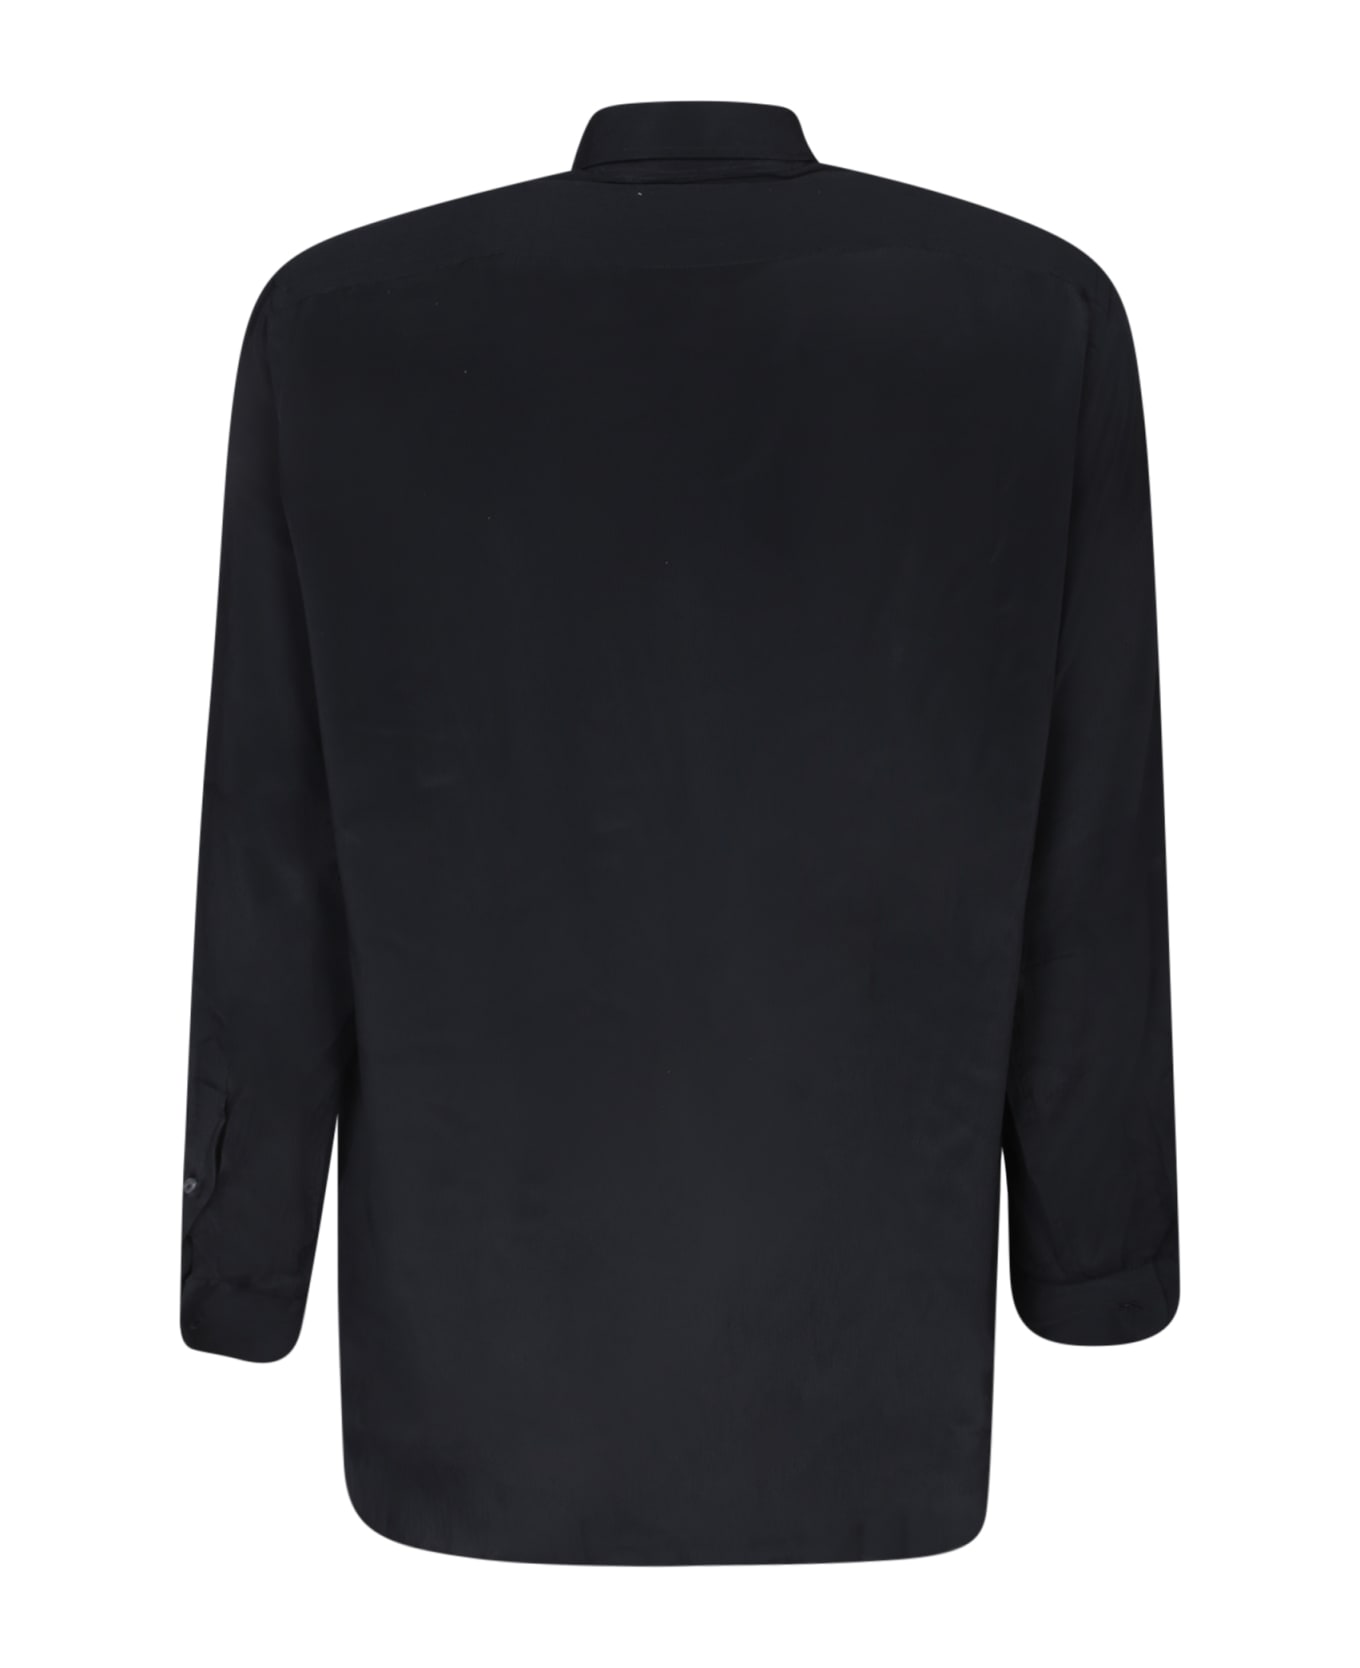 Lardini Ted Black Shirt - Black